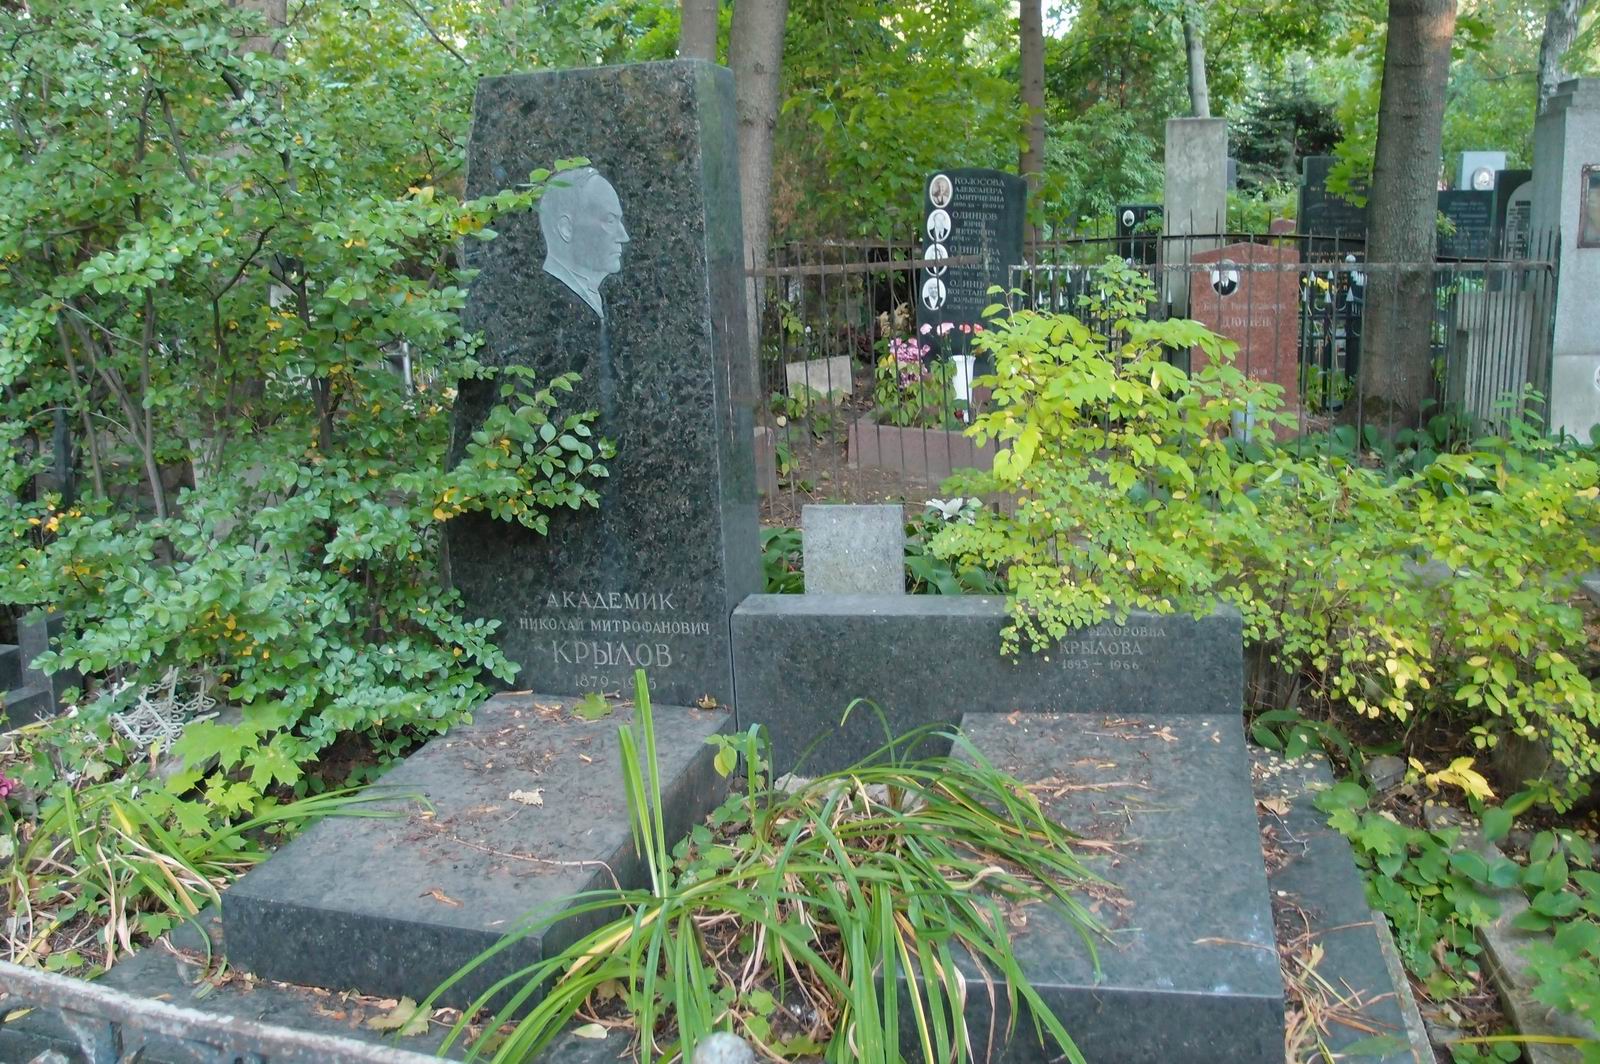 Памятник на могиле Крылова Н.М. (1879–1955), на Новодевичьем кладбище (3–38–8). Нажмите левую кнопку мыши чтобы увидеть фрагмент памятника.